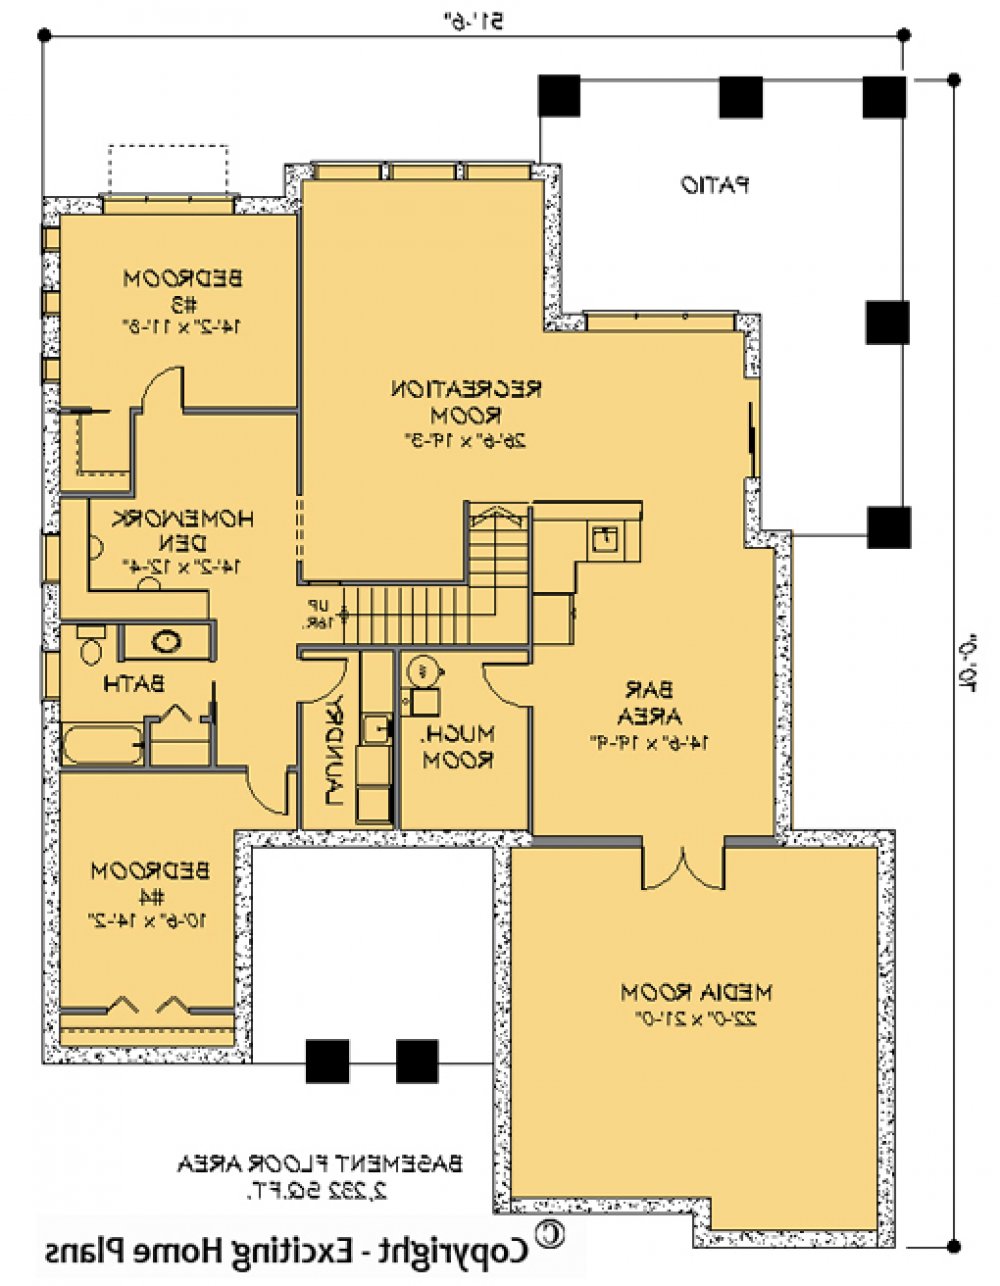 House Plan E1118-10 Lower Floor Plan REVERSE